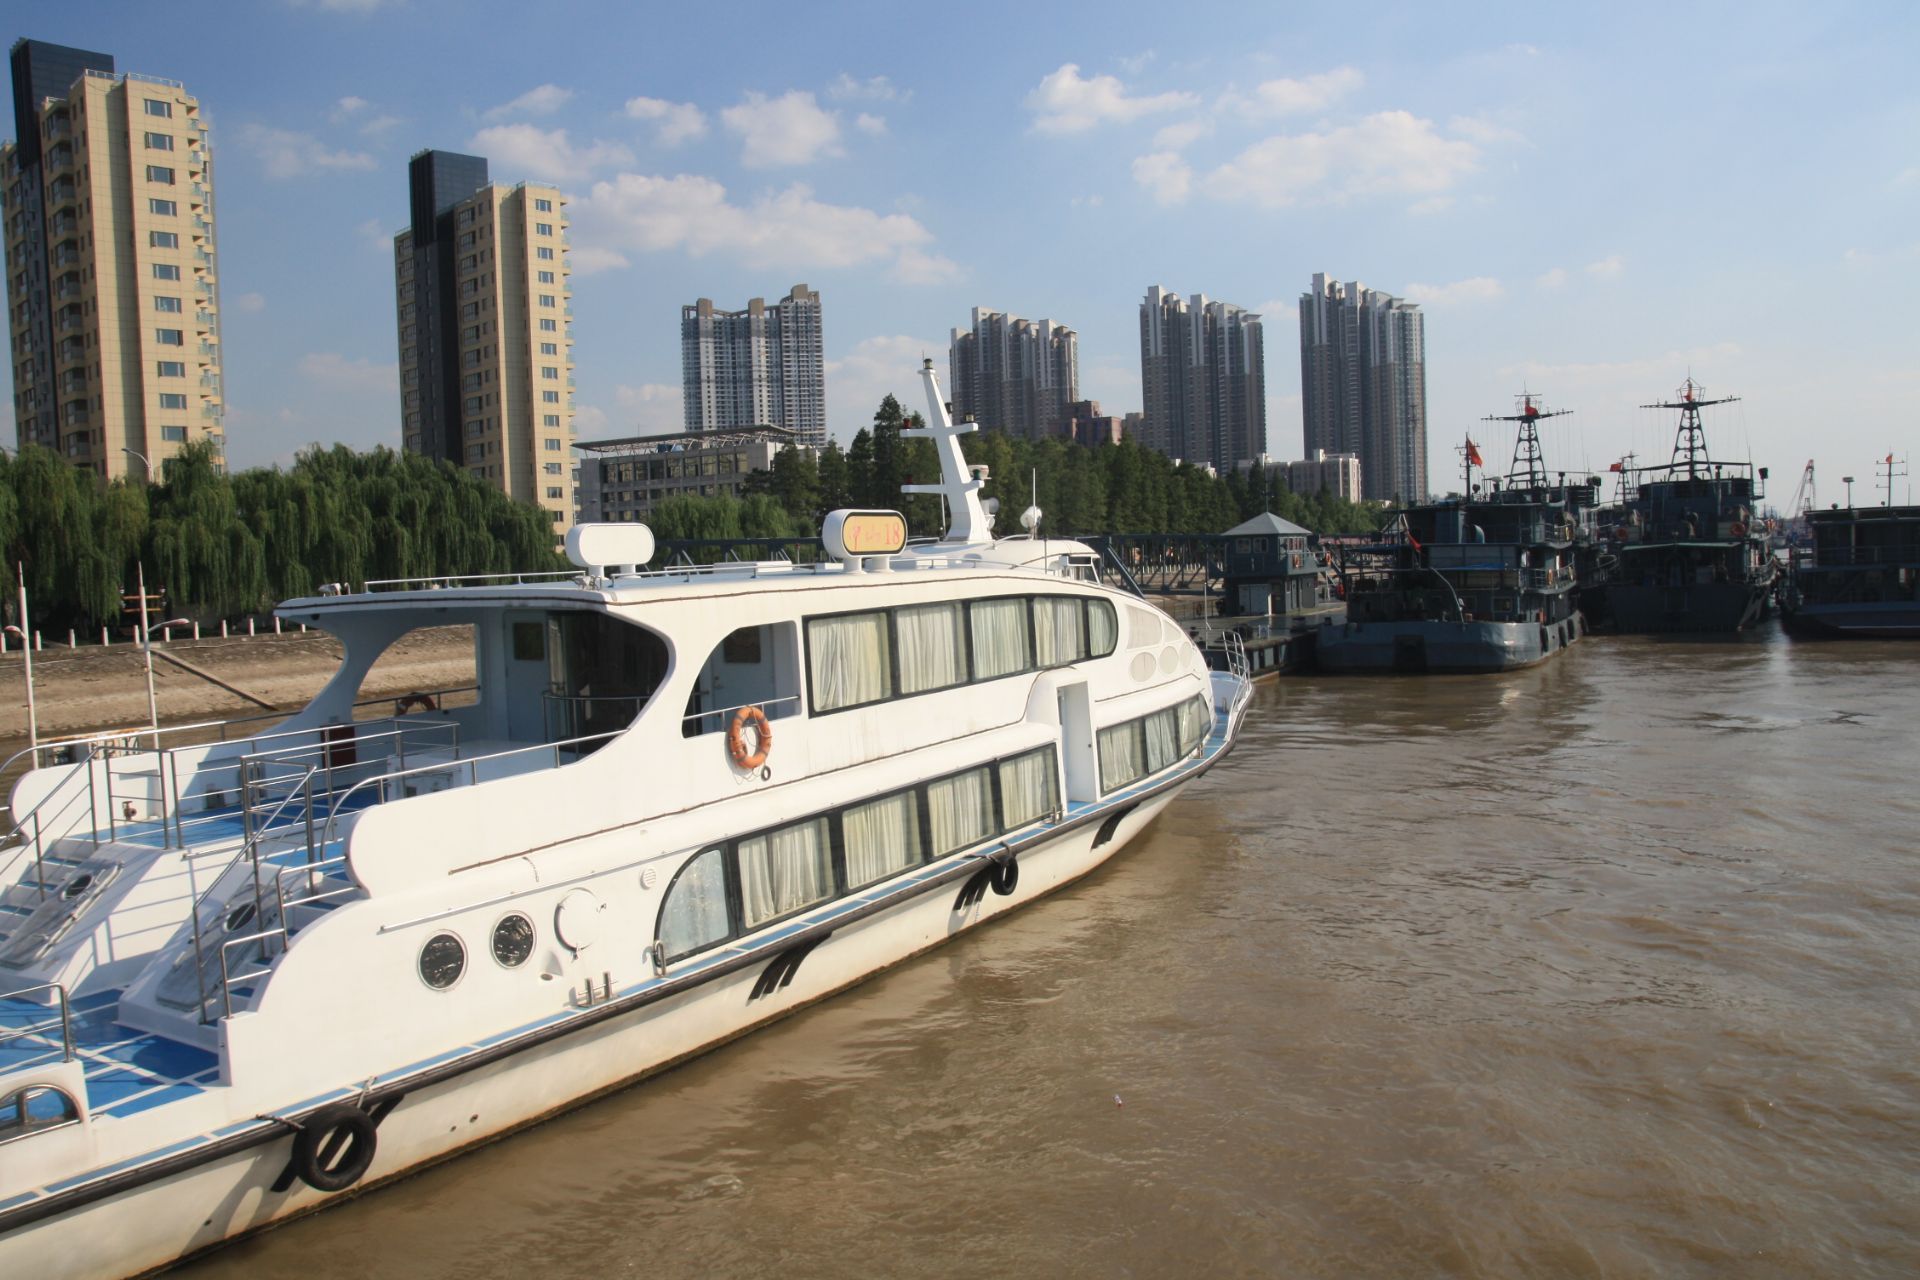 南京坐轮渡游长江实用全攻略 - 马蜂窝